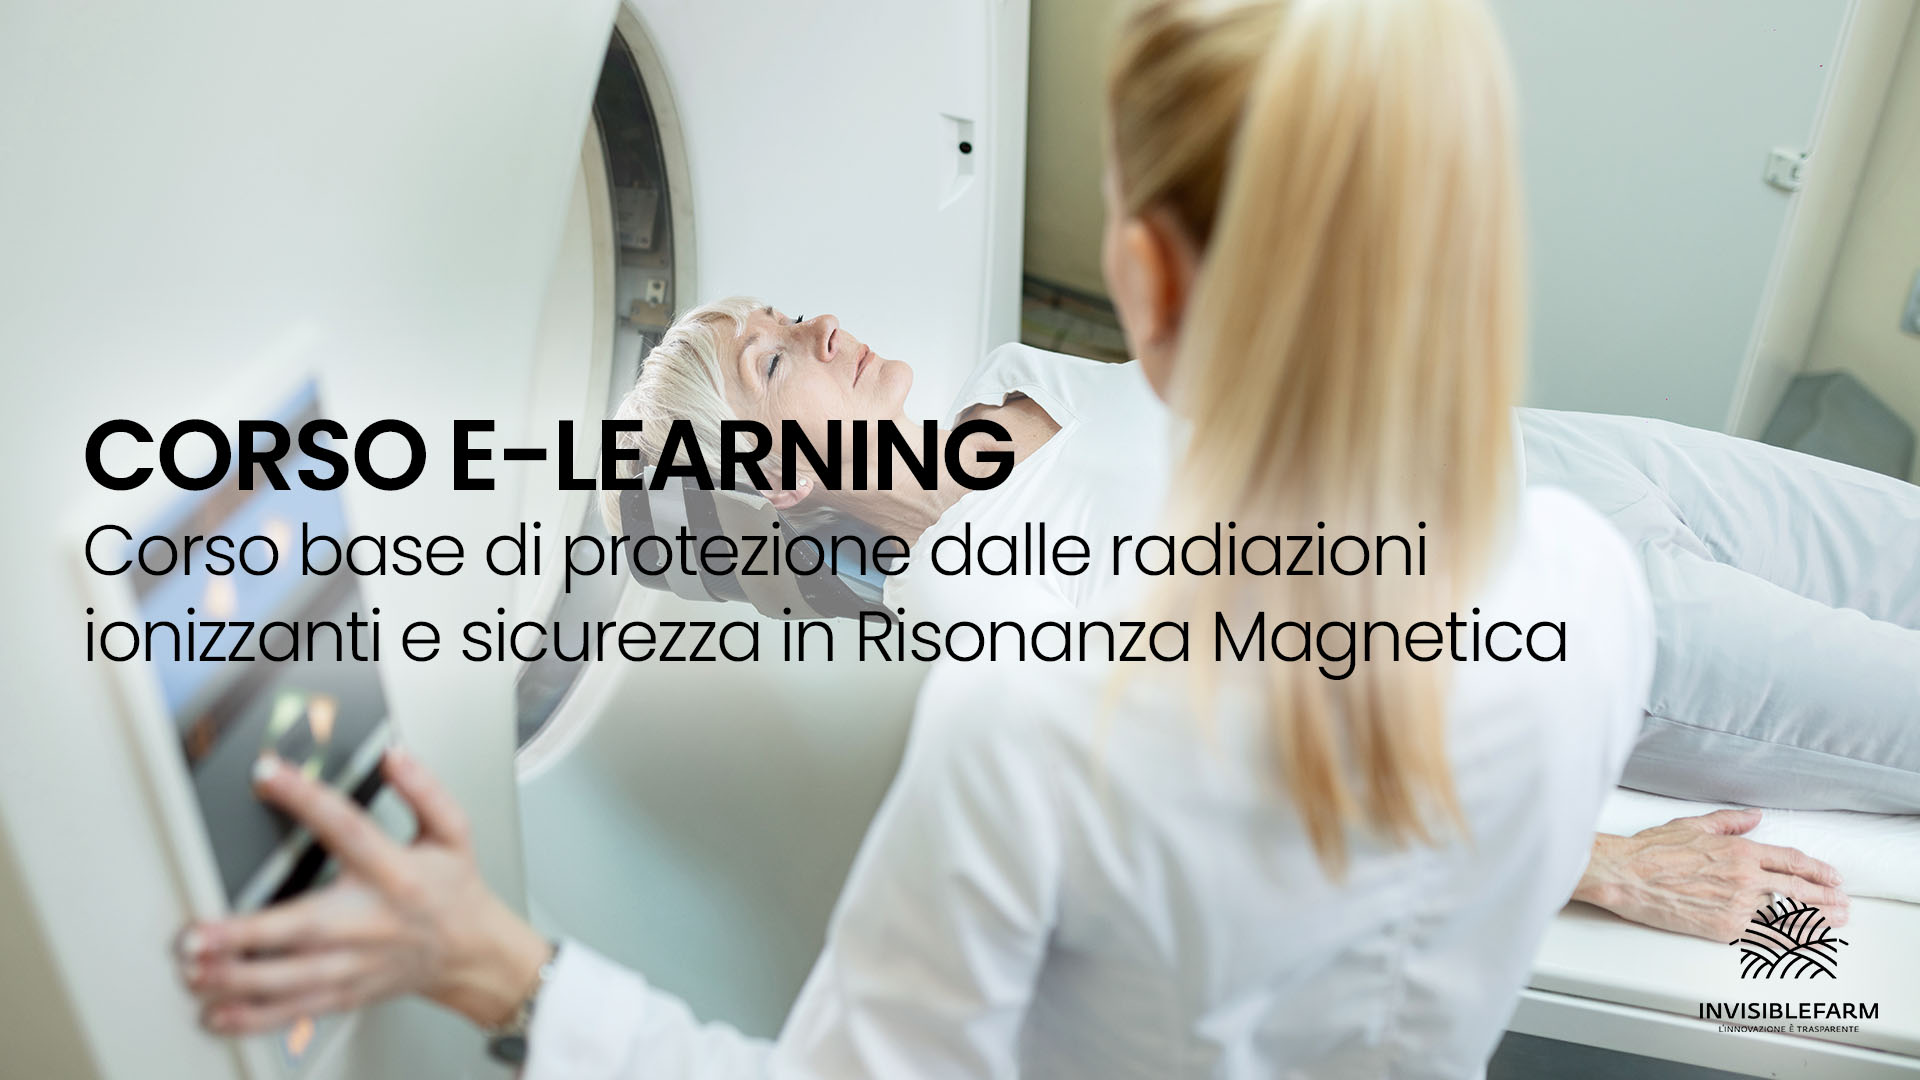 articolo sul corso e-learning sulla protezione da radiazioni ionizzanti e la risonanza magnetica